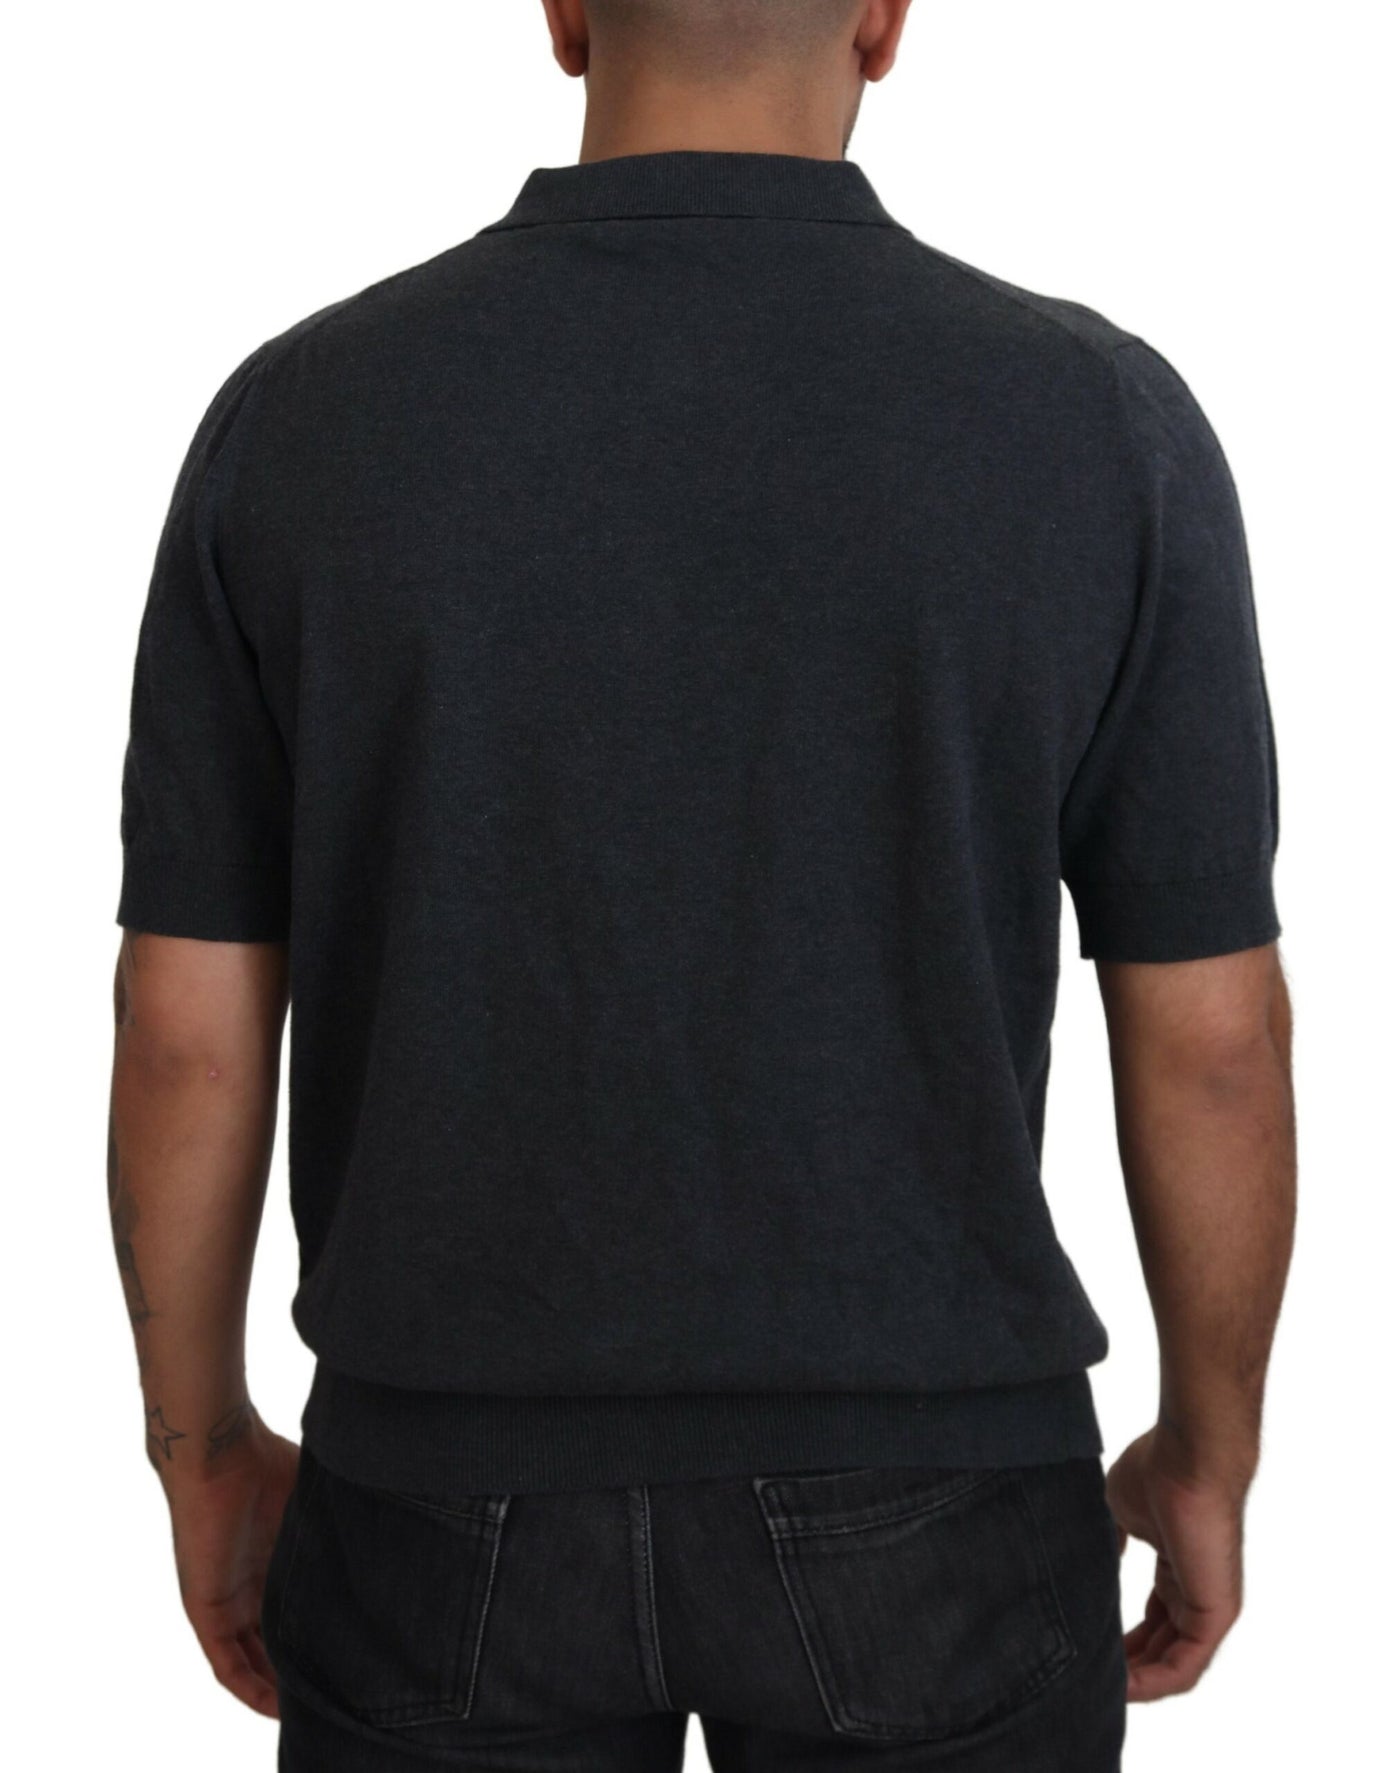 Gray Cotton Collared Polo Men T-shirt